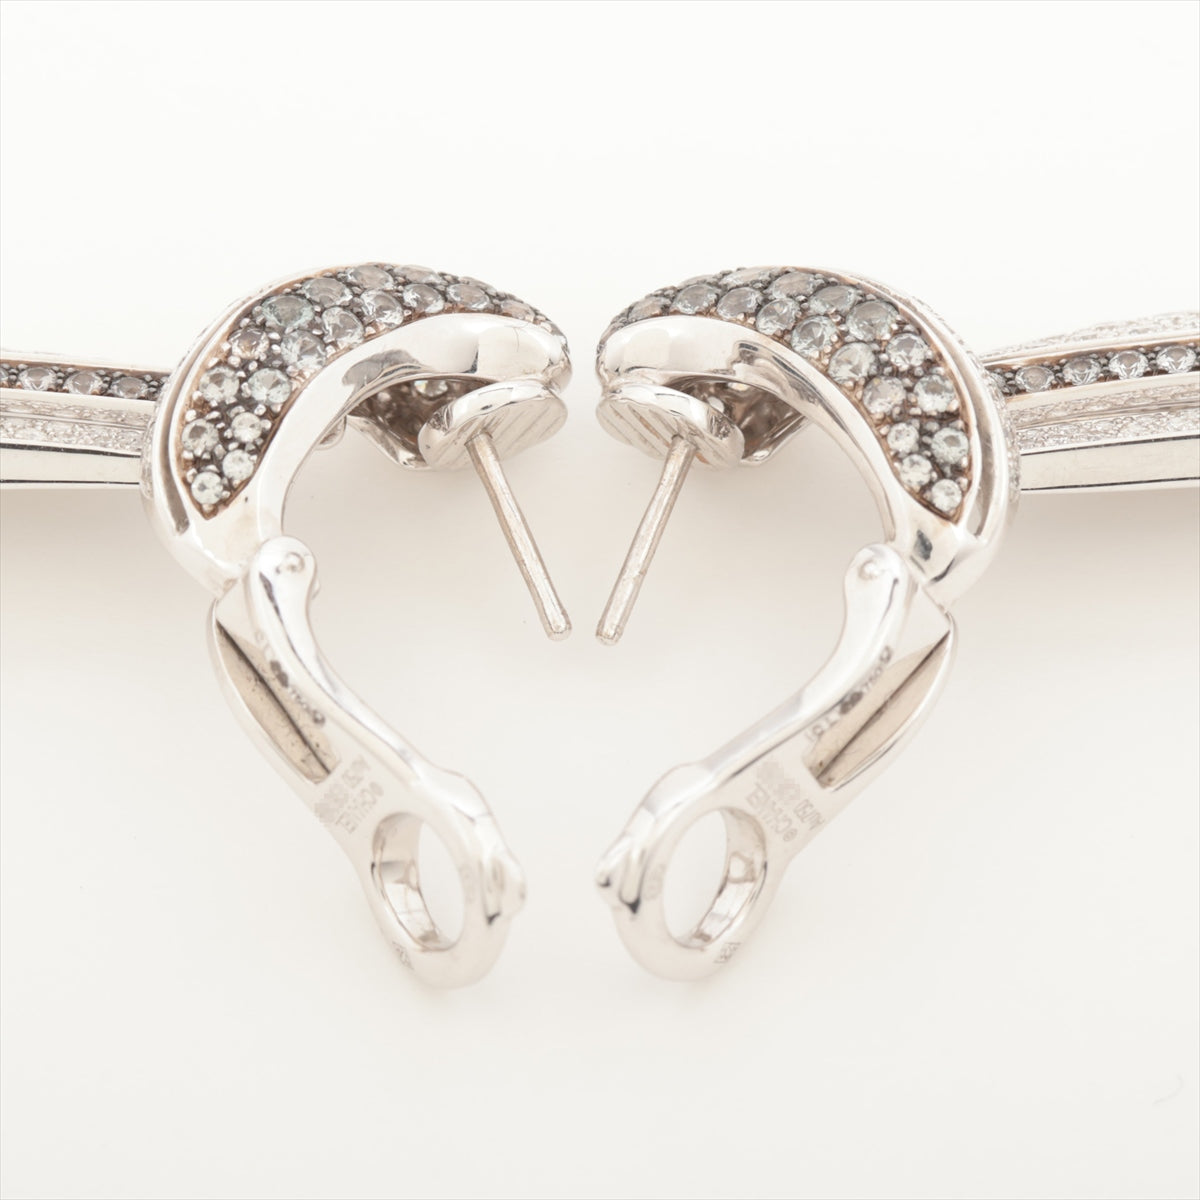 Chanel Pearl Diamond Earrings 750(WG) 26.2g